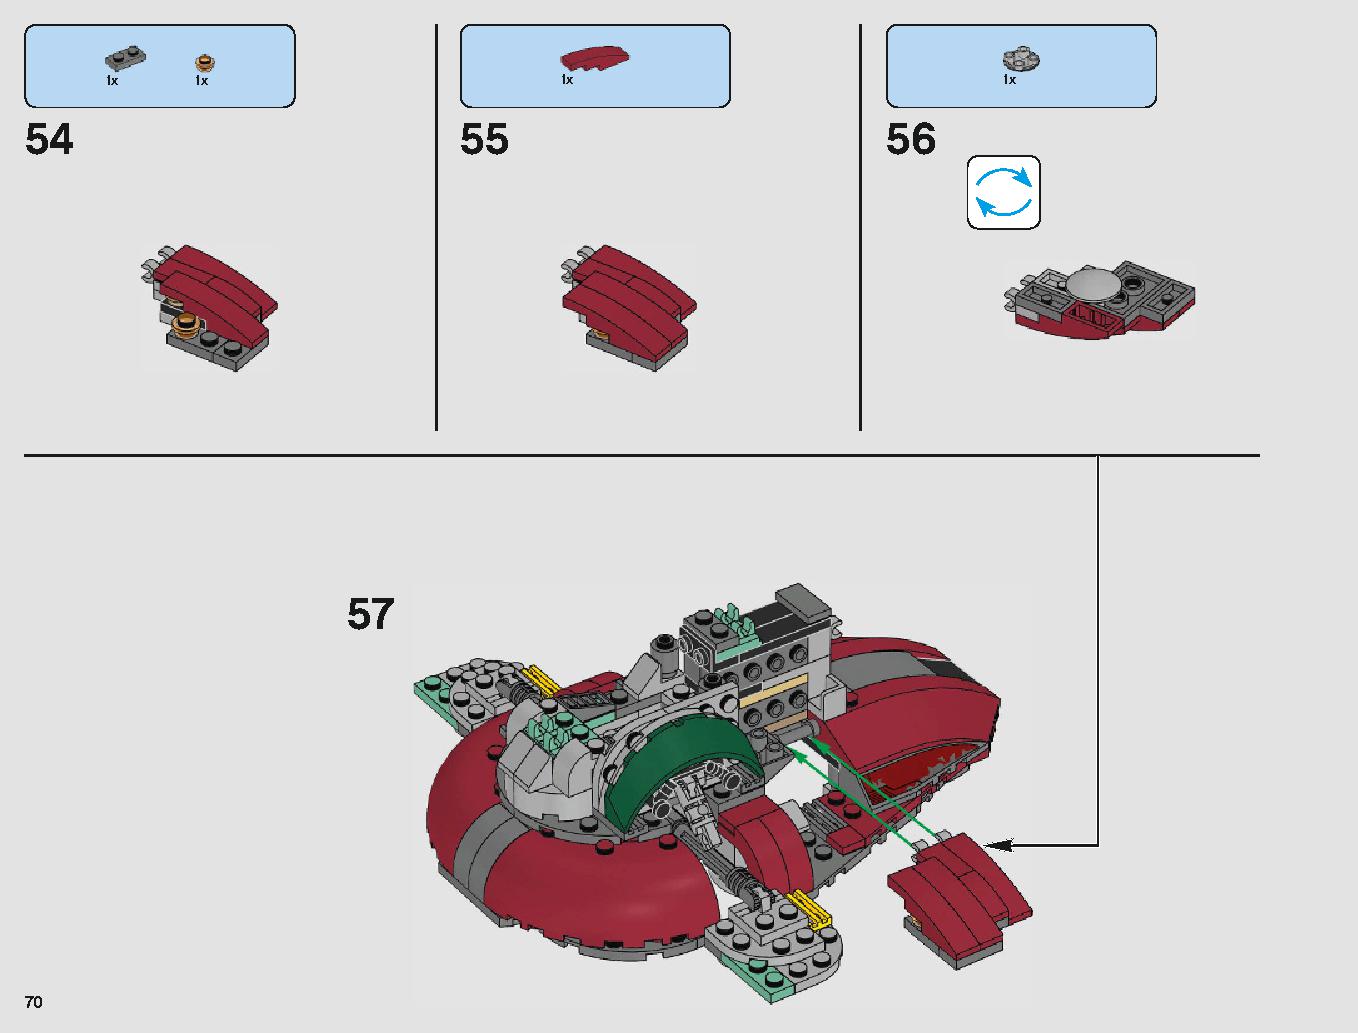 クラウド・シティ 75222 レゴの商品情報 レゴの説明書・組立方法 70 page